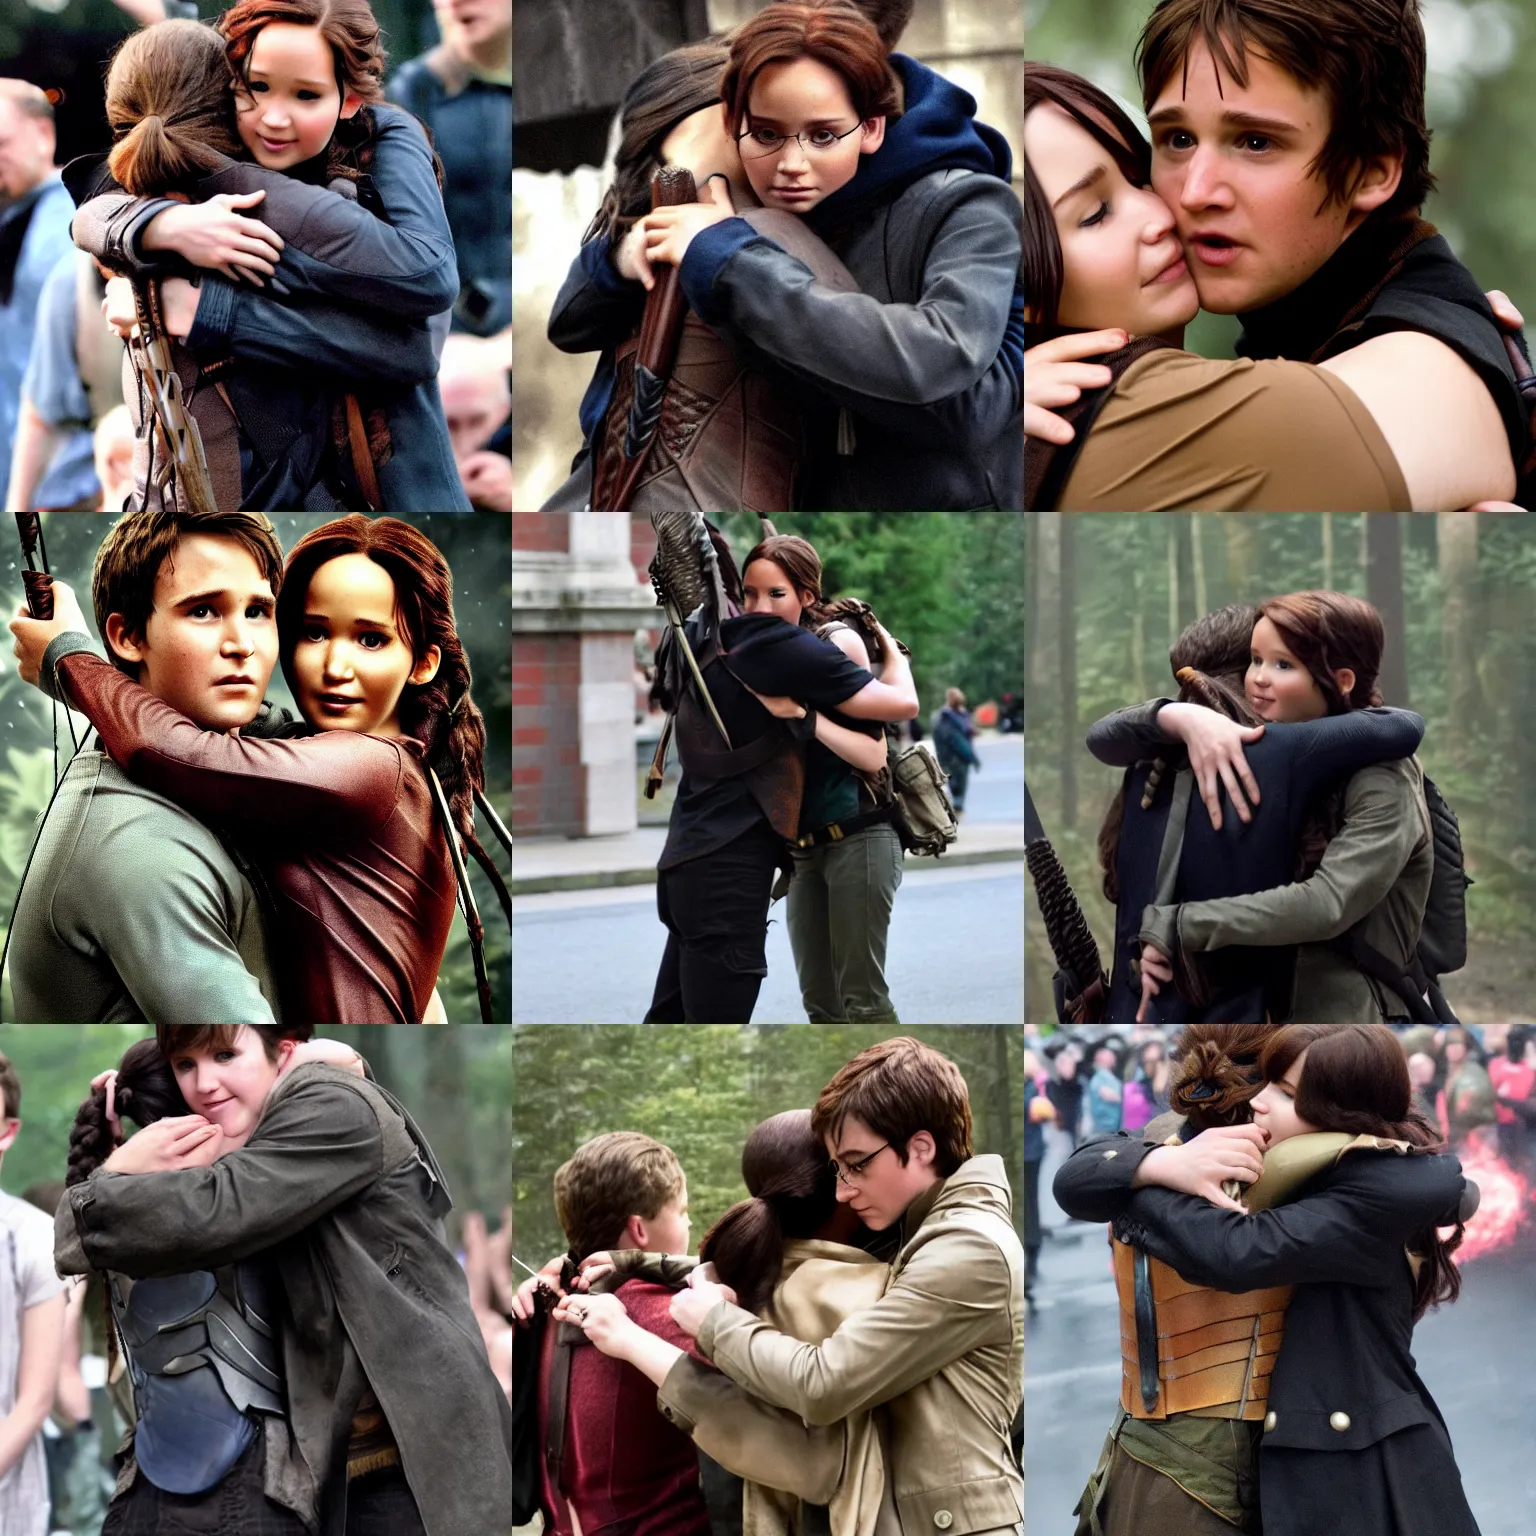 Prompt: Katniss Everdeen hugs Harry Potter